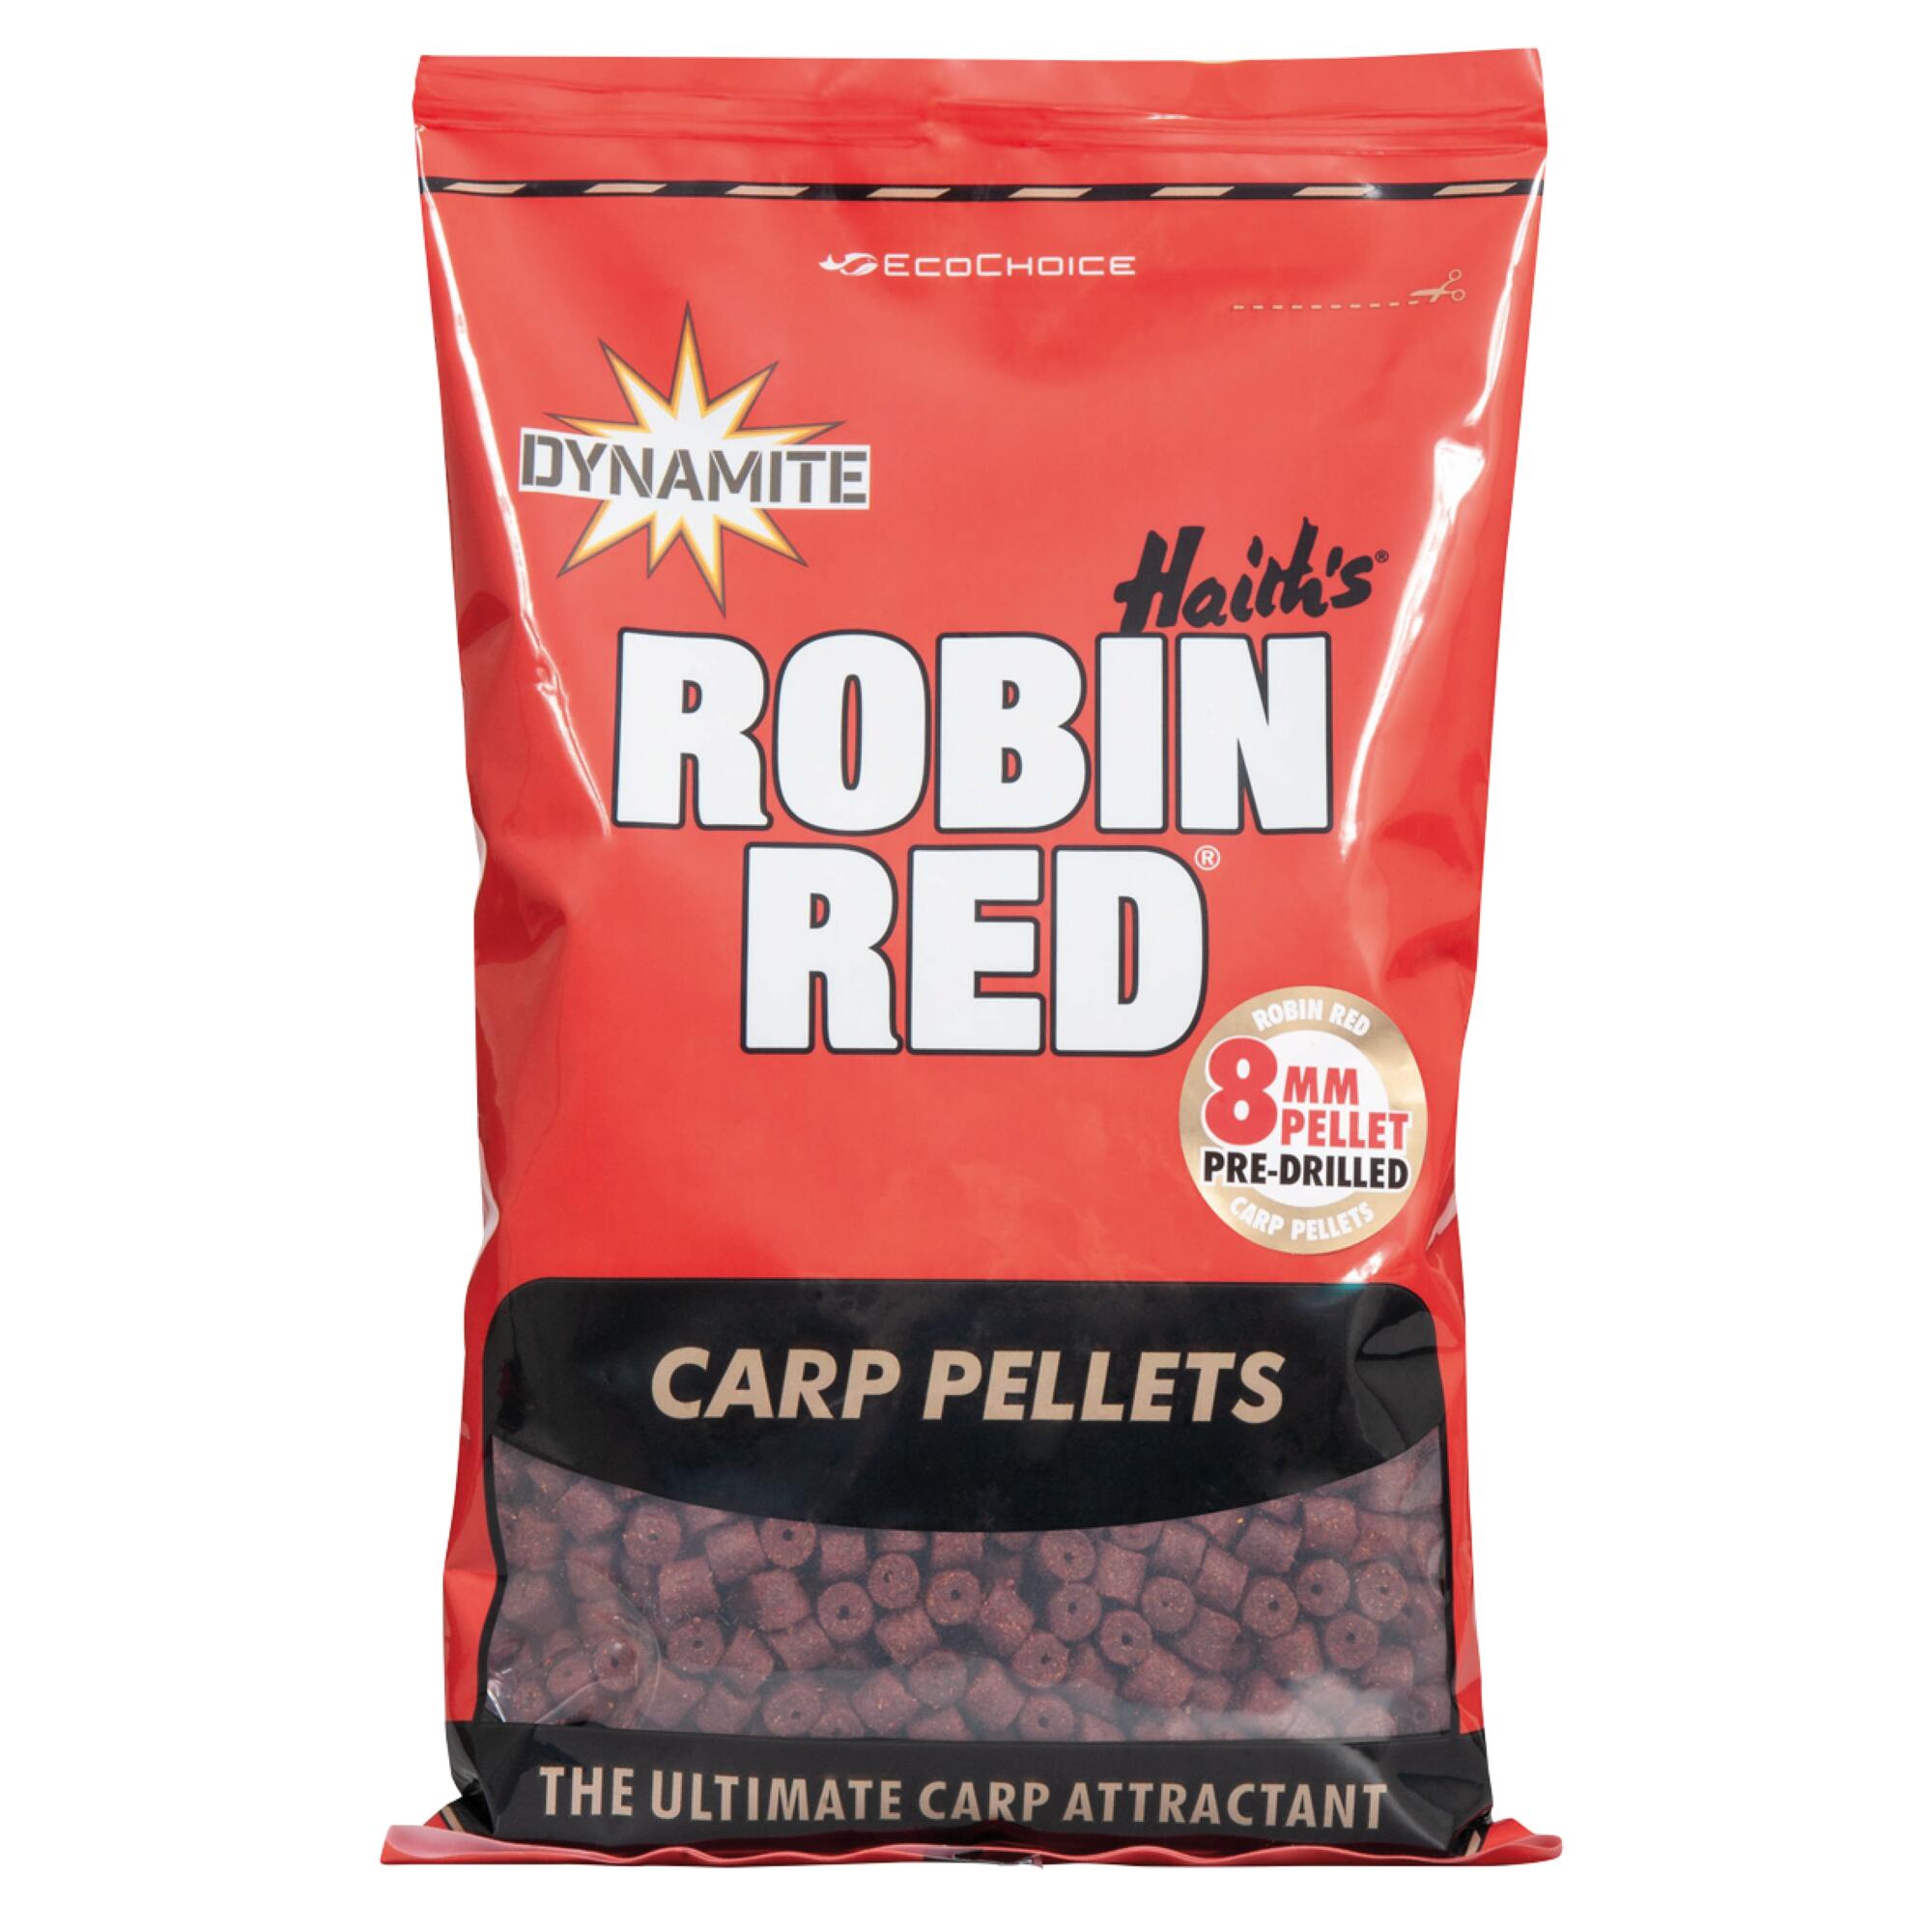 ROBIN RED CARP PELLETS 4/5